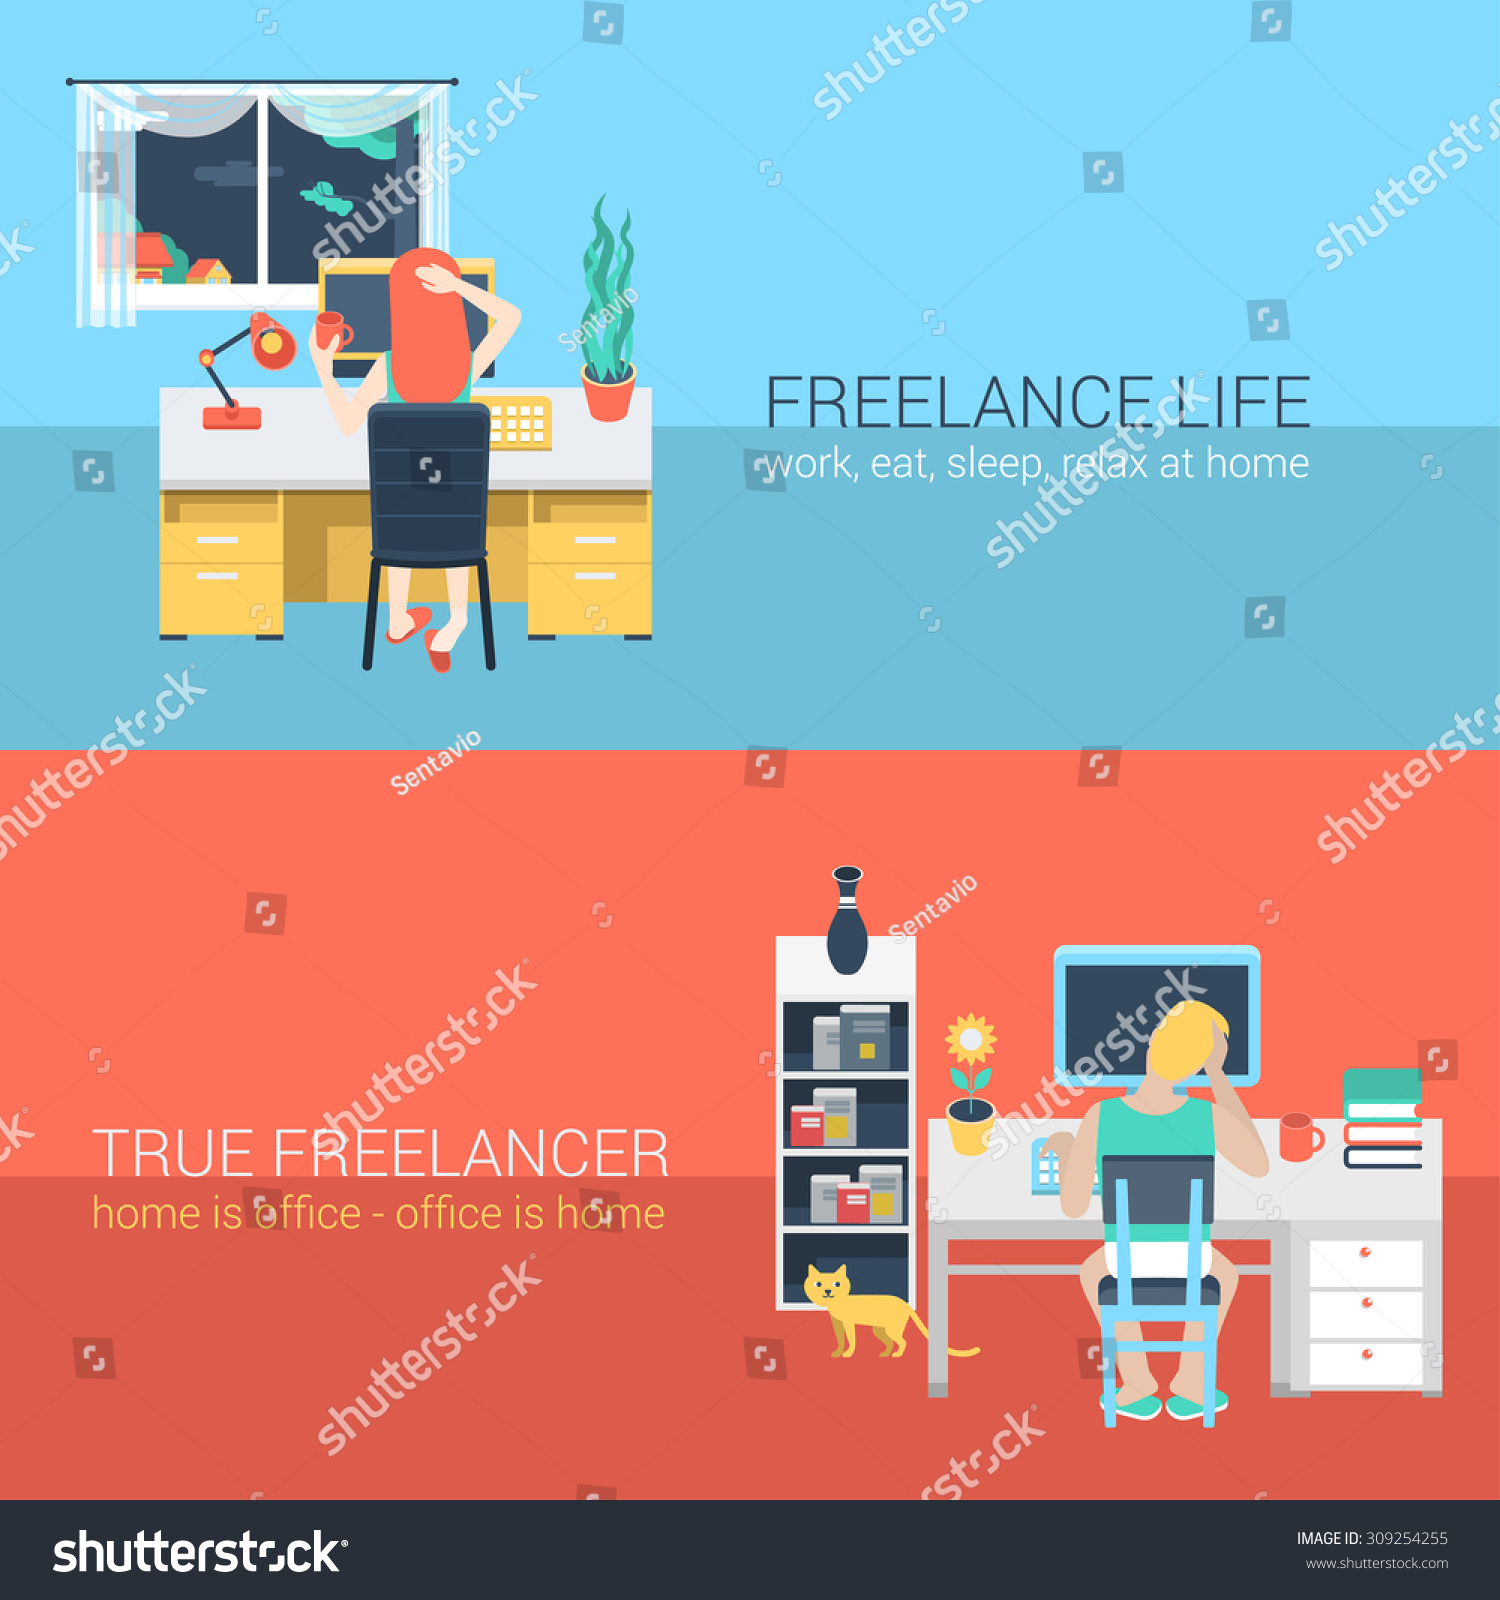 Freelance homework